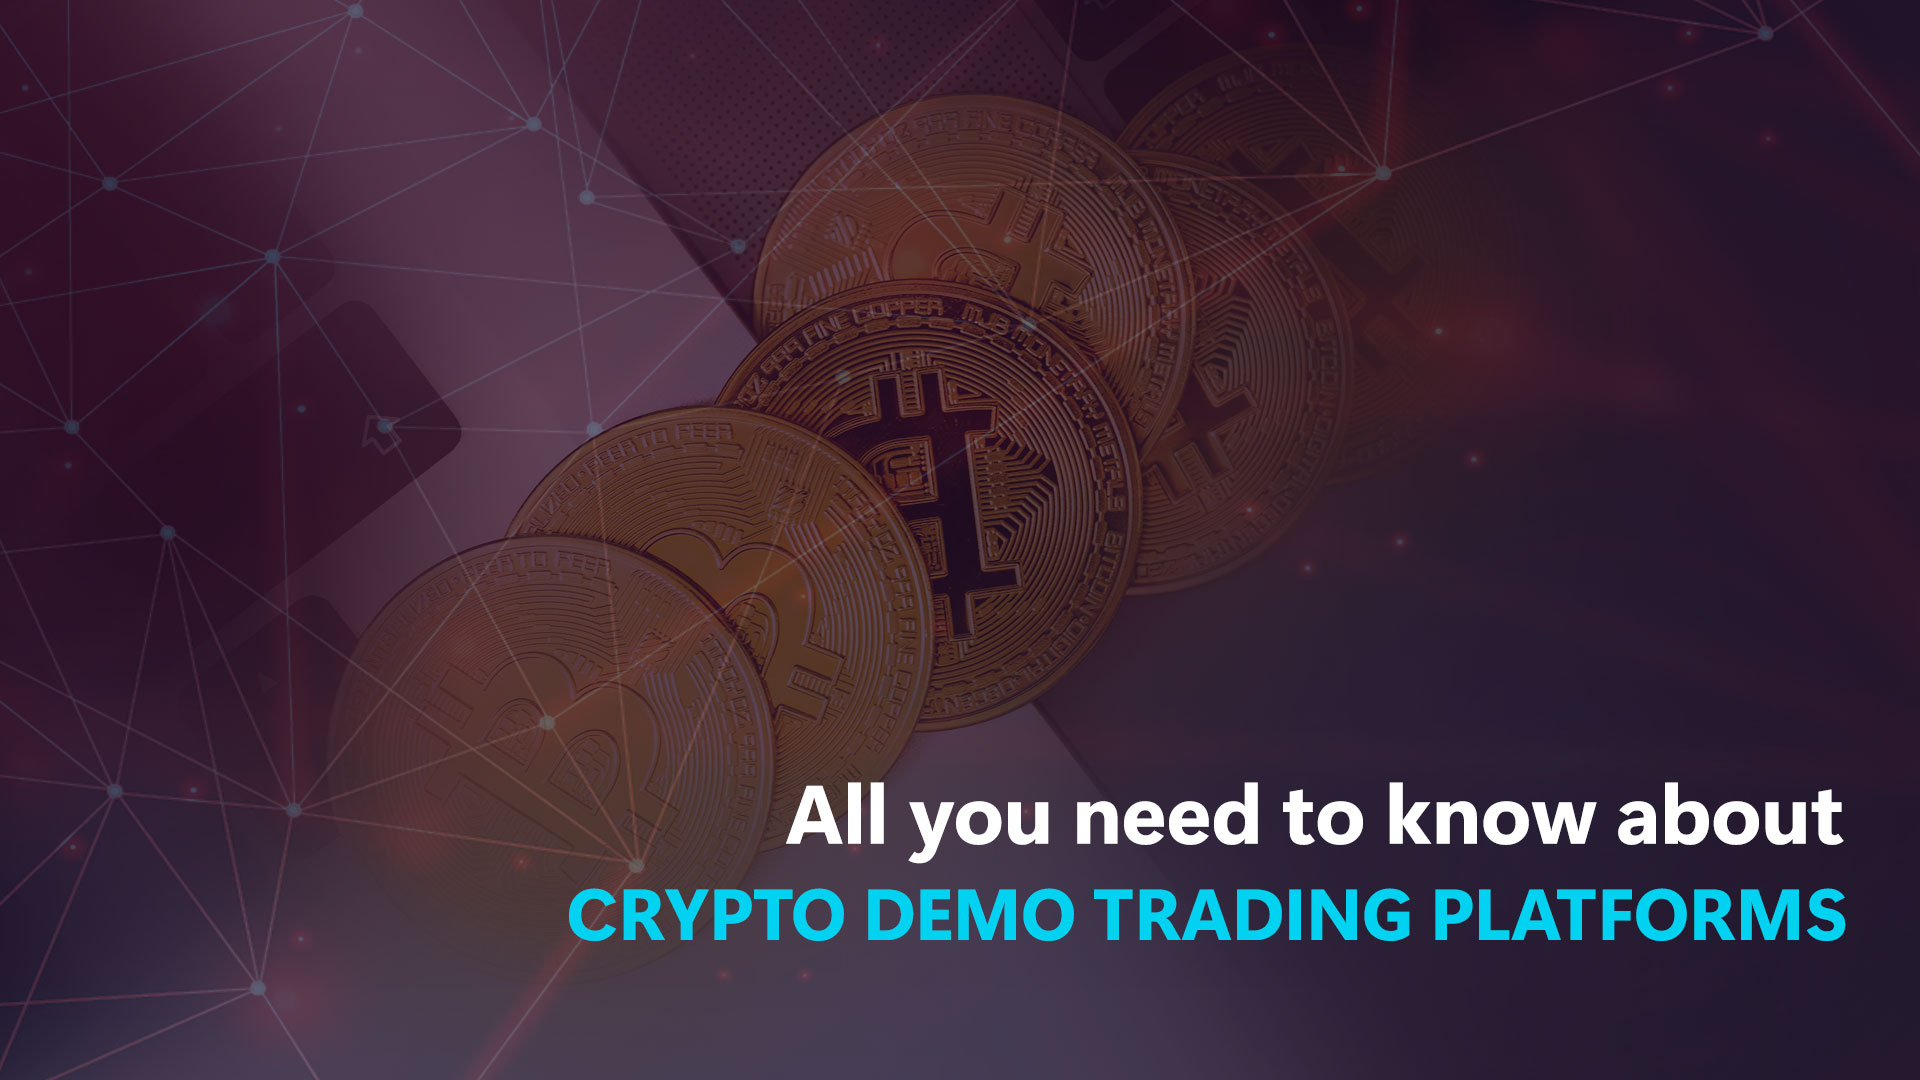 Alles wat u moet weten over Crypto demo trading platforms